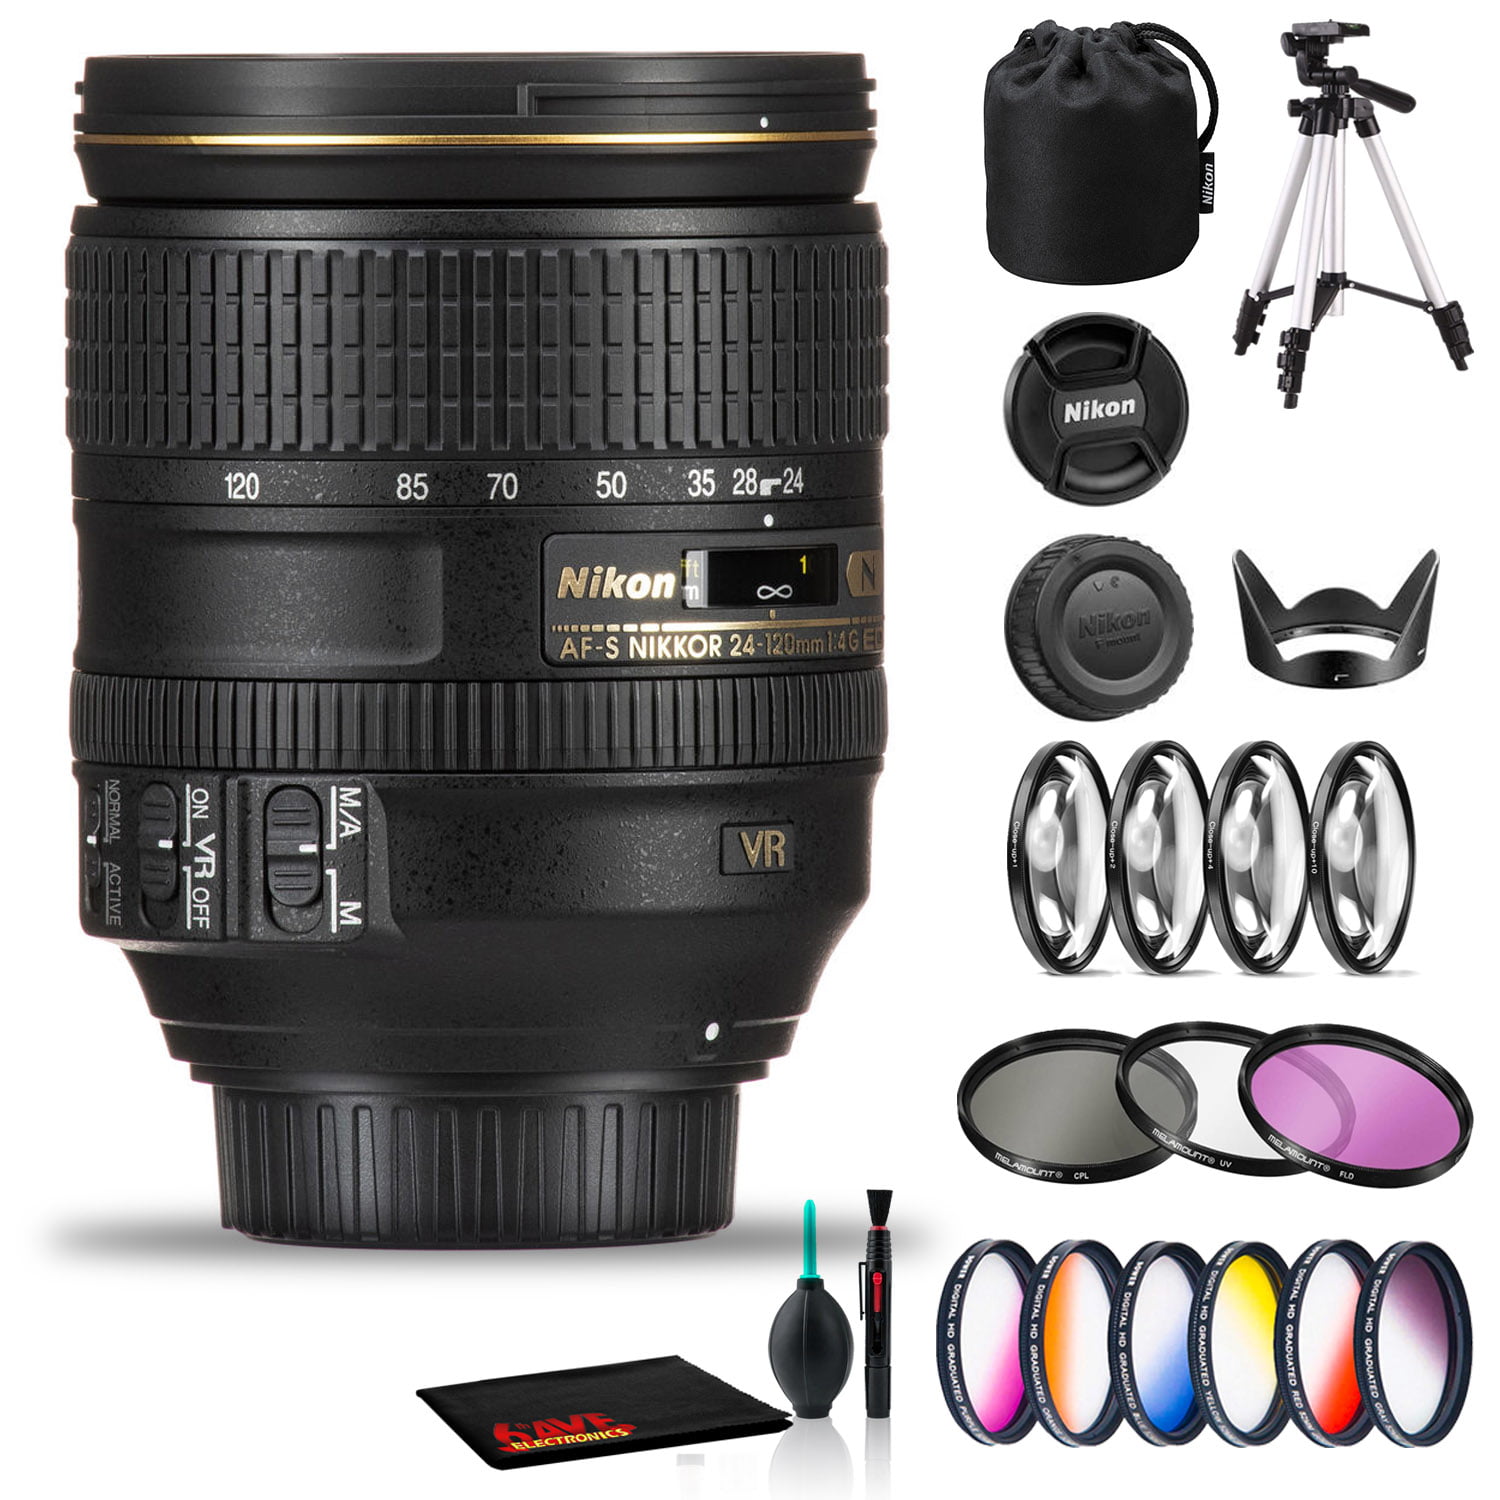 Nikon NIKKOR 24-120mm f/4G VR Lens Includes Filter Kits and Tripod (Intl Model) -